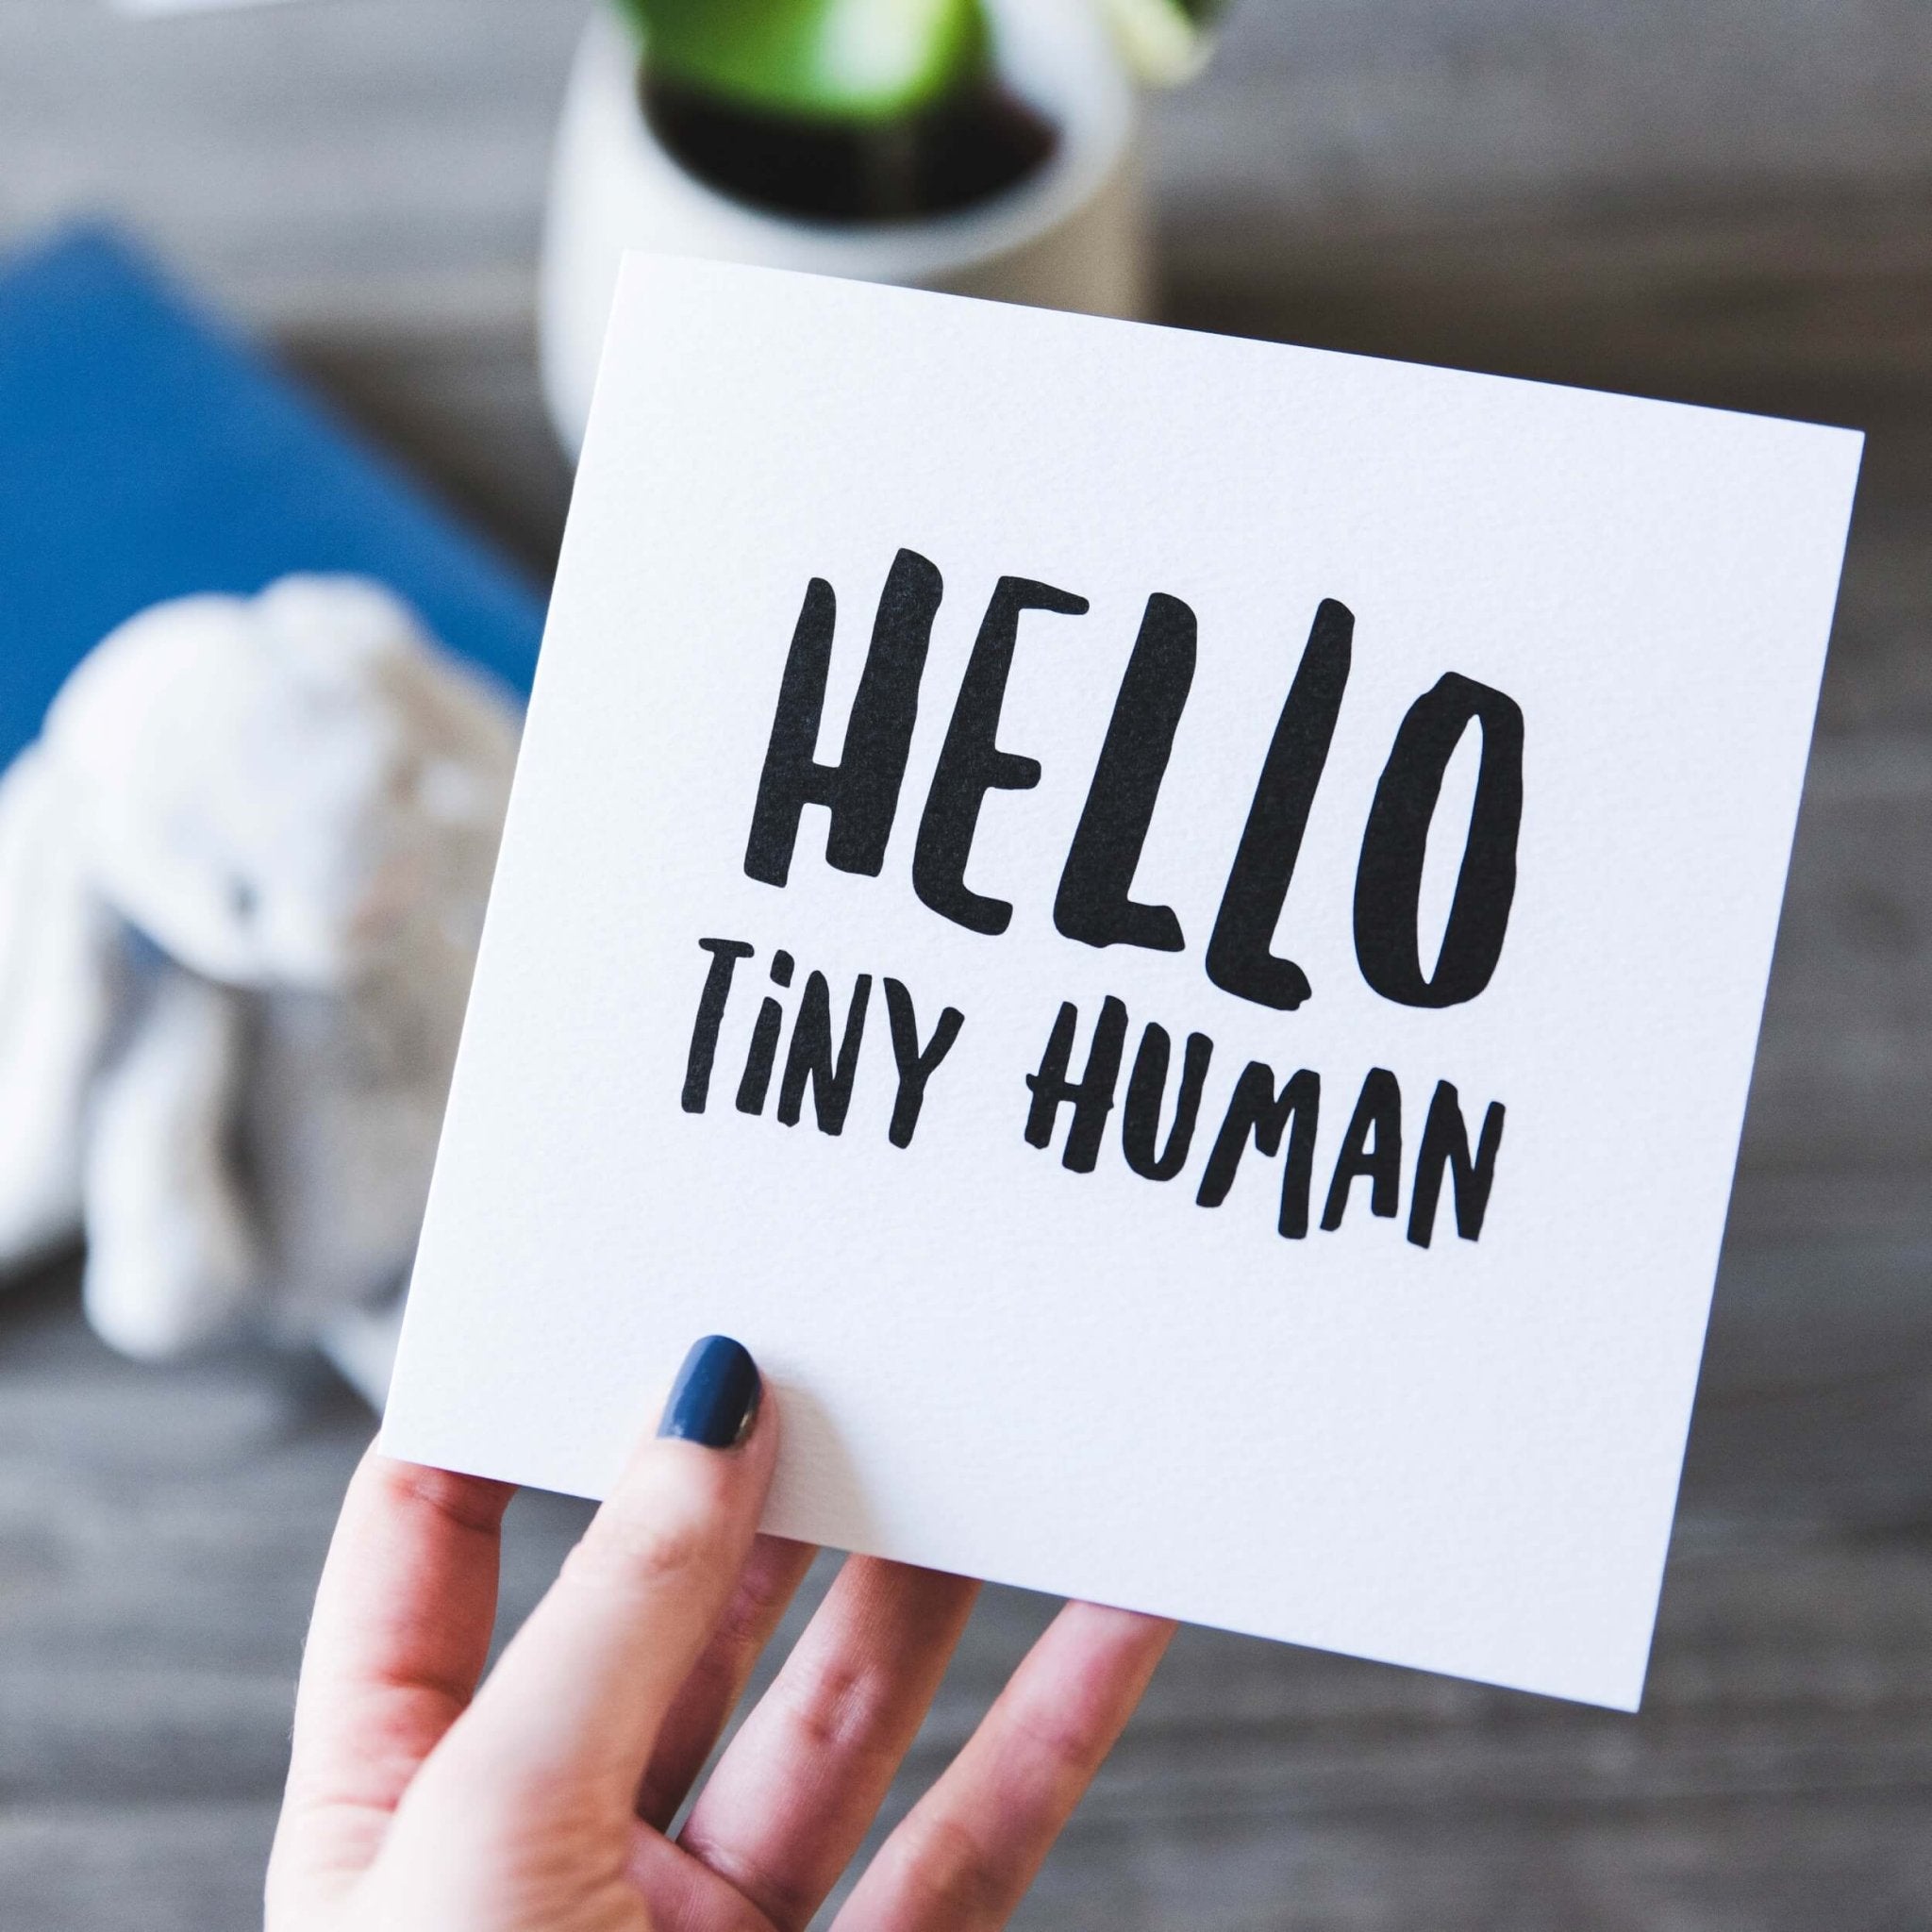 &#39;Hello Tiny Human&#39; New Baby Card - I am Nat Ltd - Greeting Card